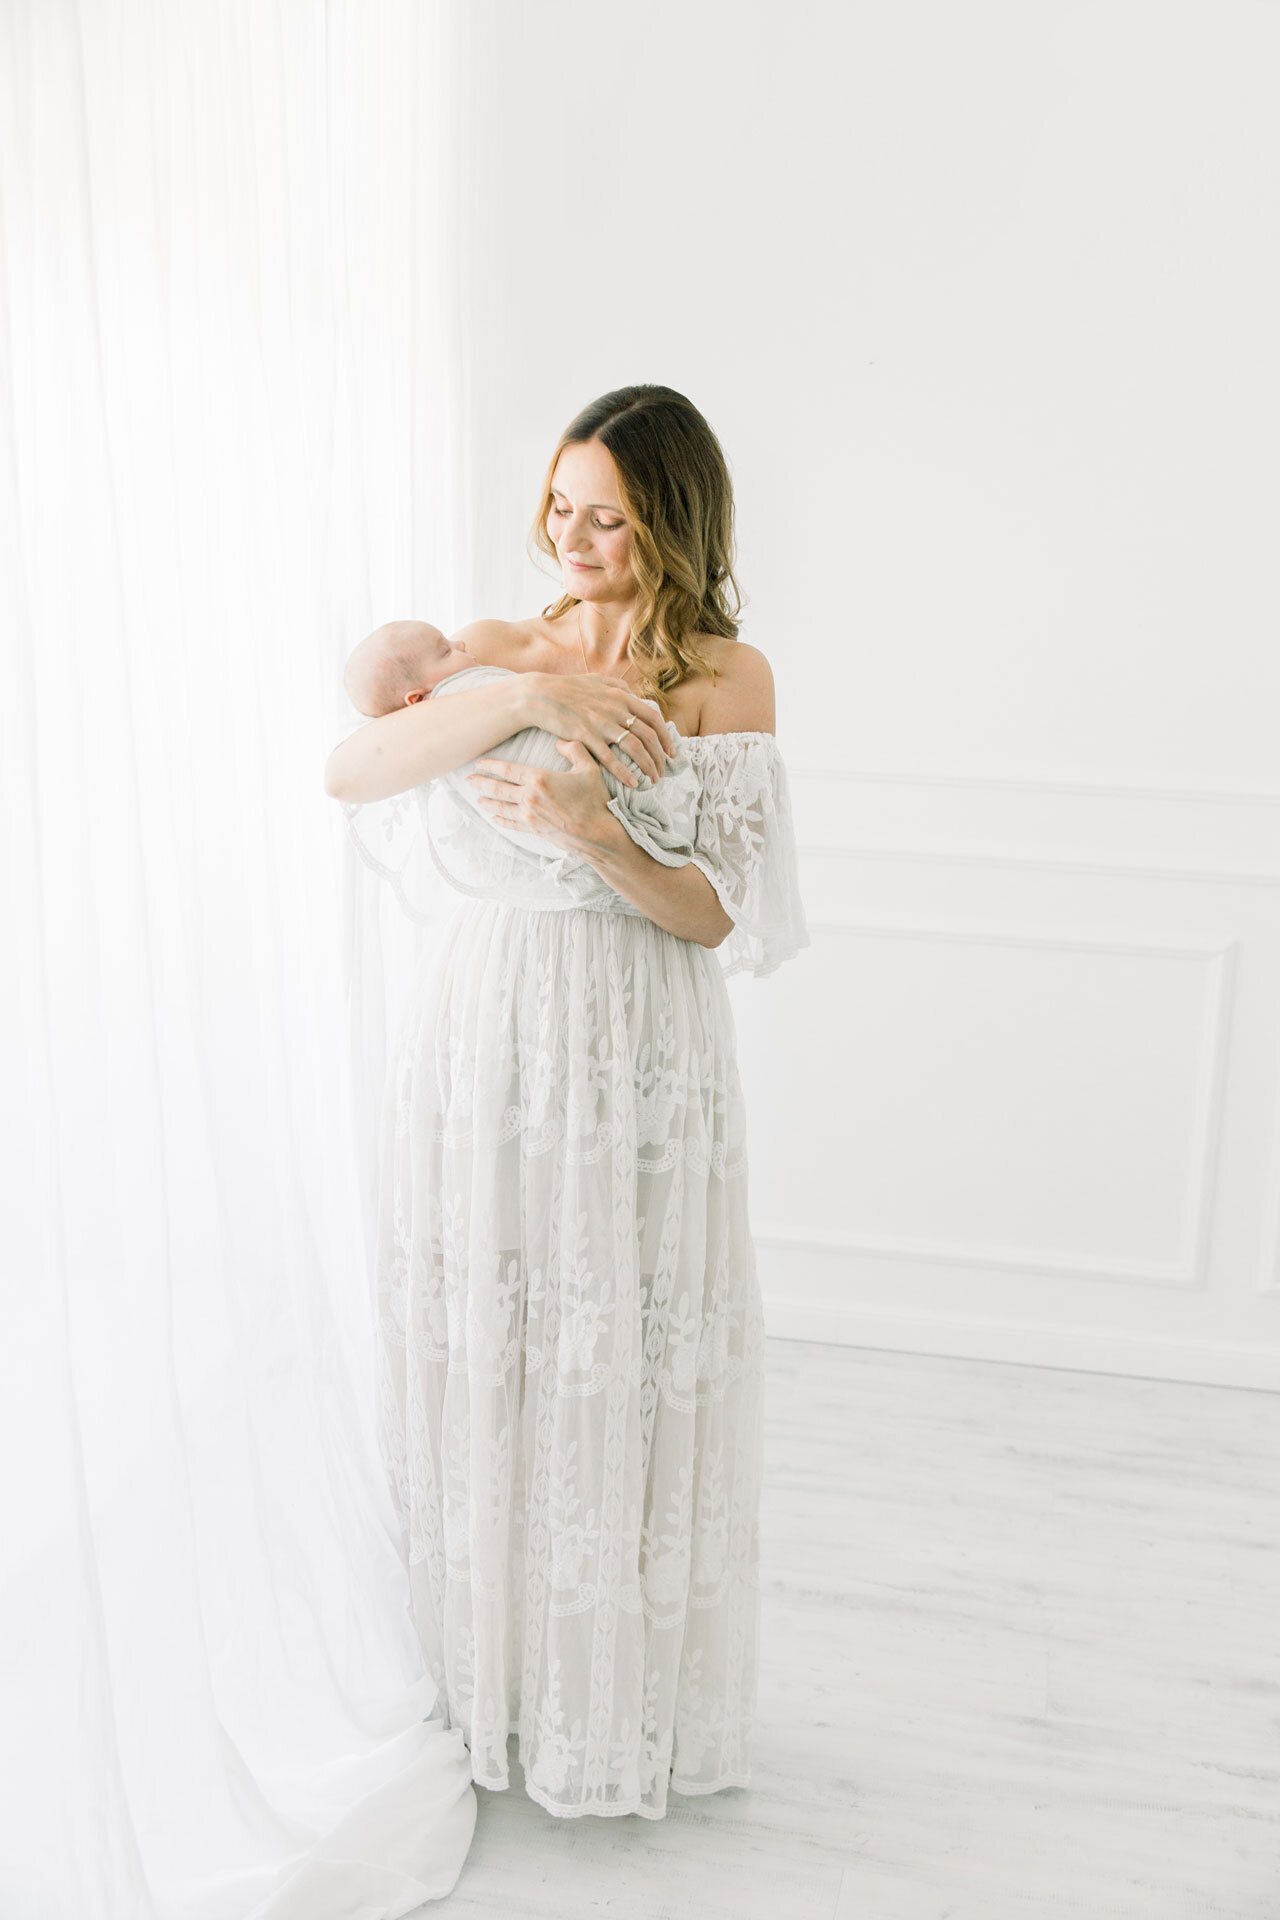 Babyshooting: Mama in langem weißen Spitzenkleid vor weißer Gardine hält ihr schlafendes Neugeborenes im Arm.